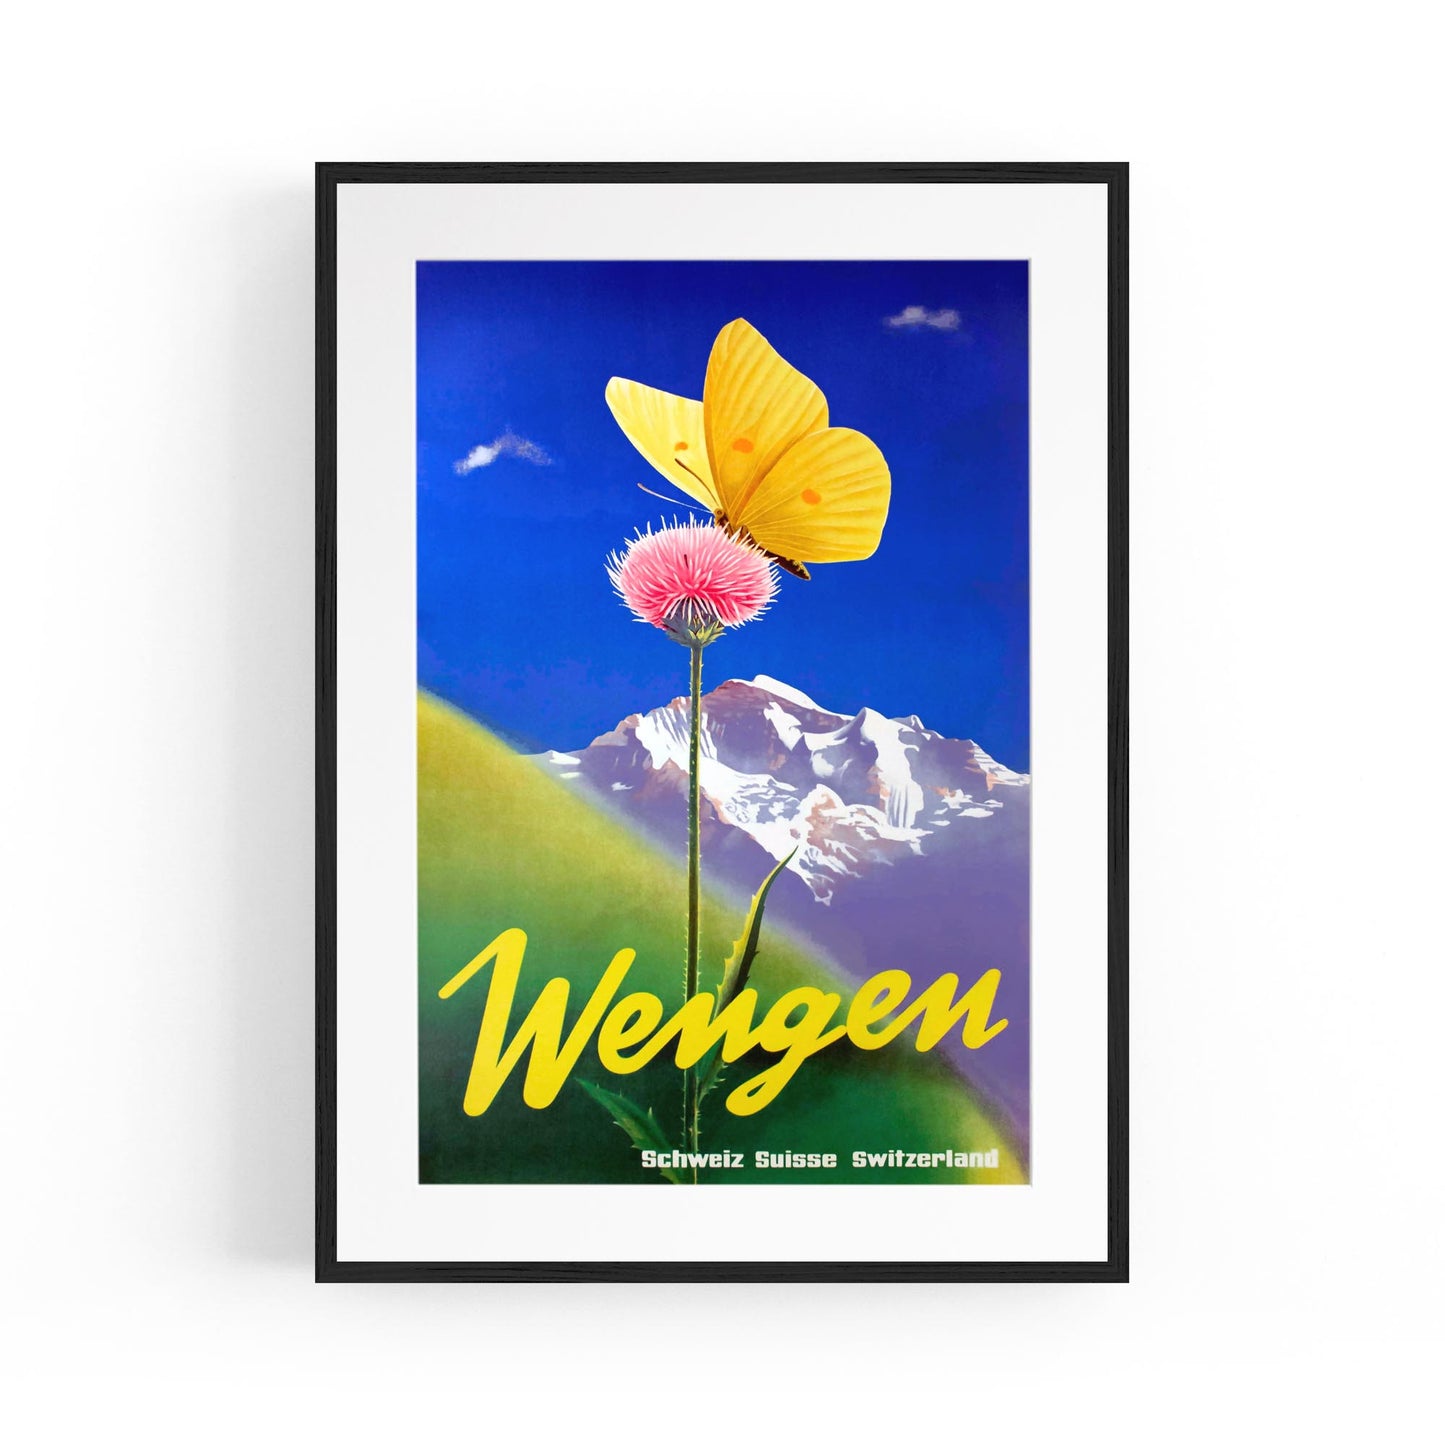 Wengen, Switzerland by Leo Keck | Framed Vintage Travel Poster